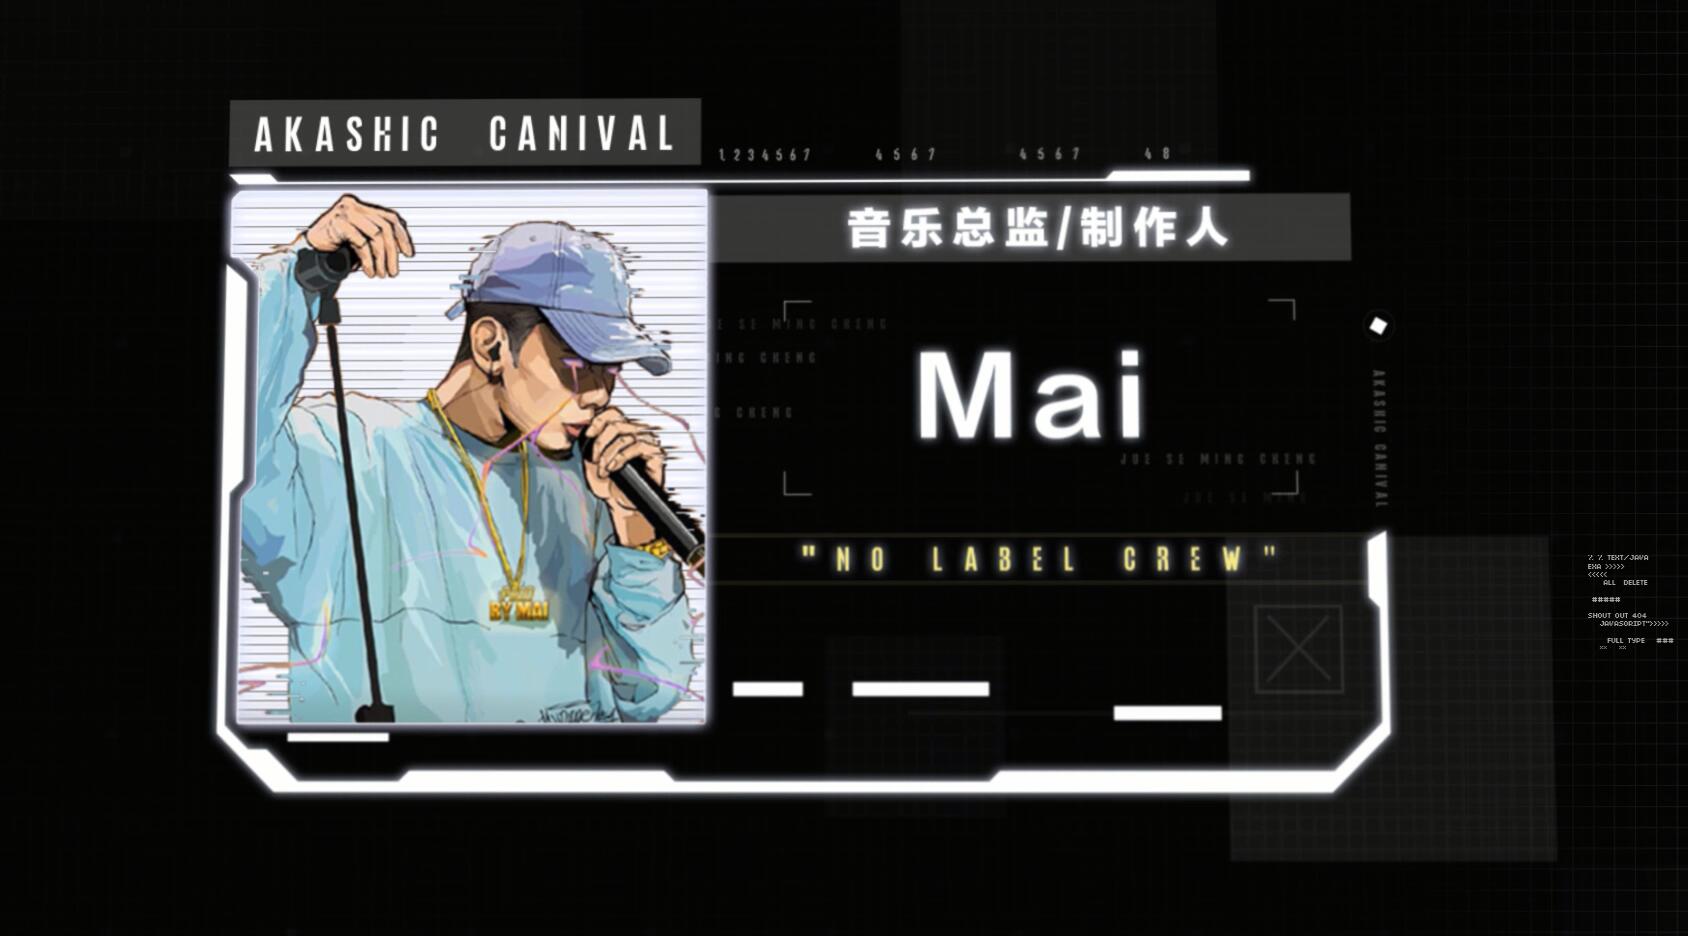 【妄想嘉年华】[音乐总监/制作人]Mai＂No Label Crew＂视频信件